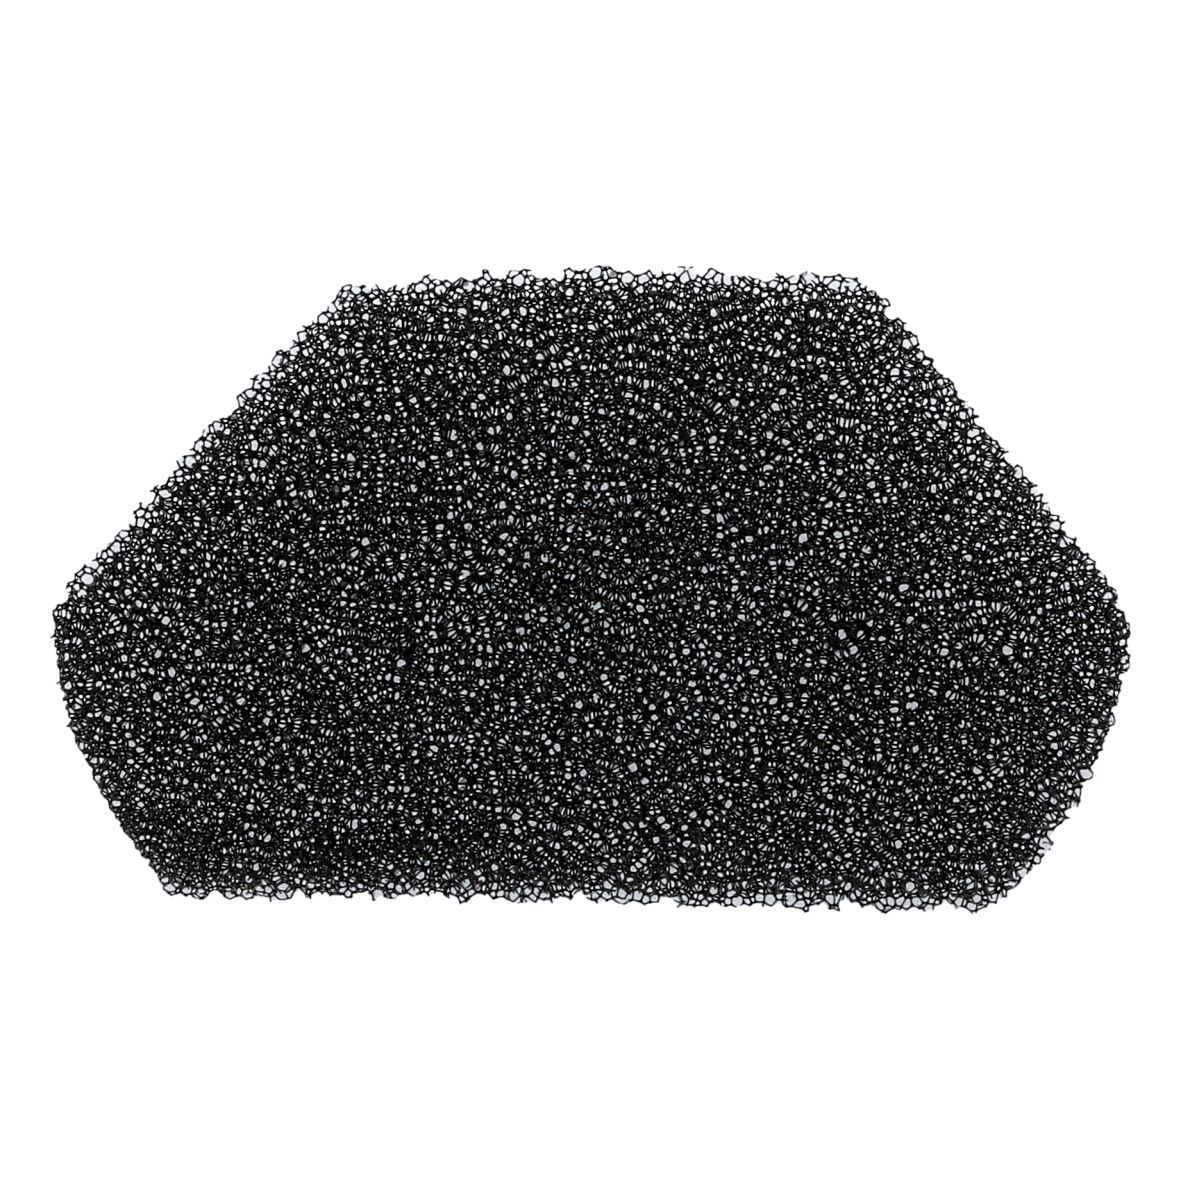 Schaumfilter BSH 10000775 sechseckig schwarz für Träger Staubsauger (KD-10000775)